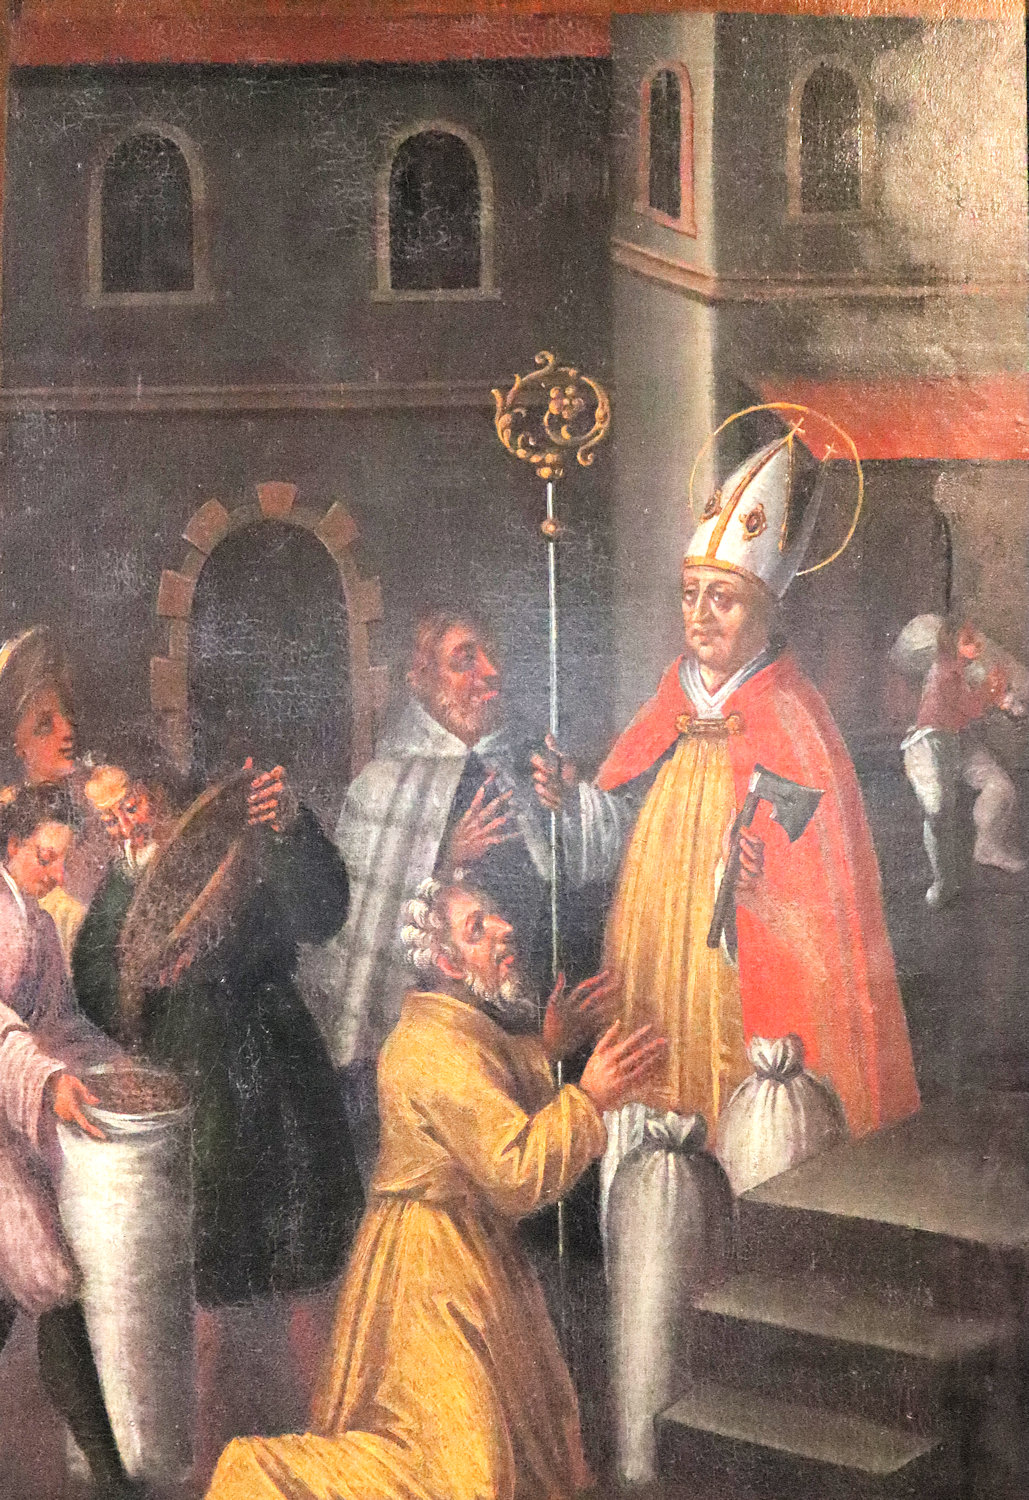 Wolfgang hilft als Bischof von Regensburg den Armen